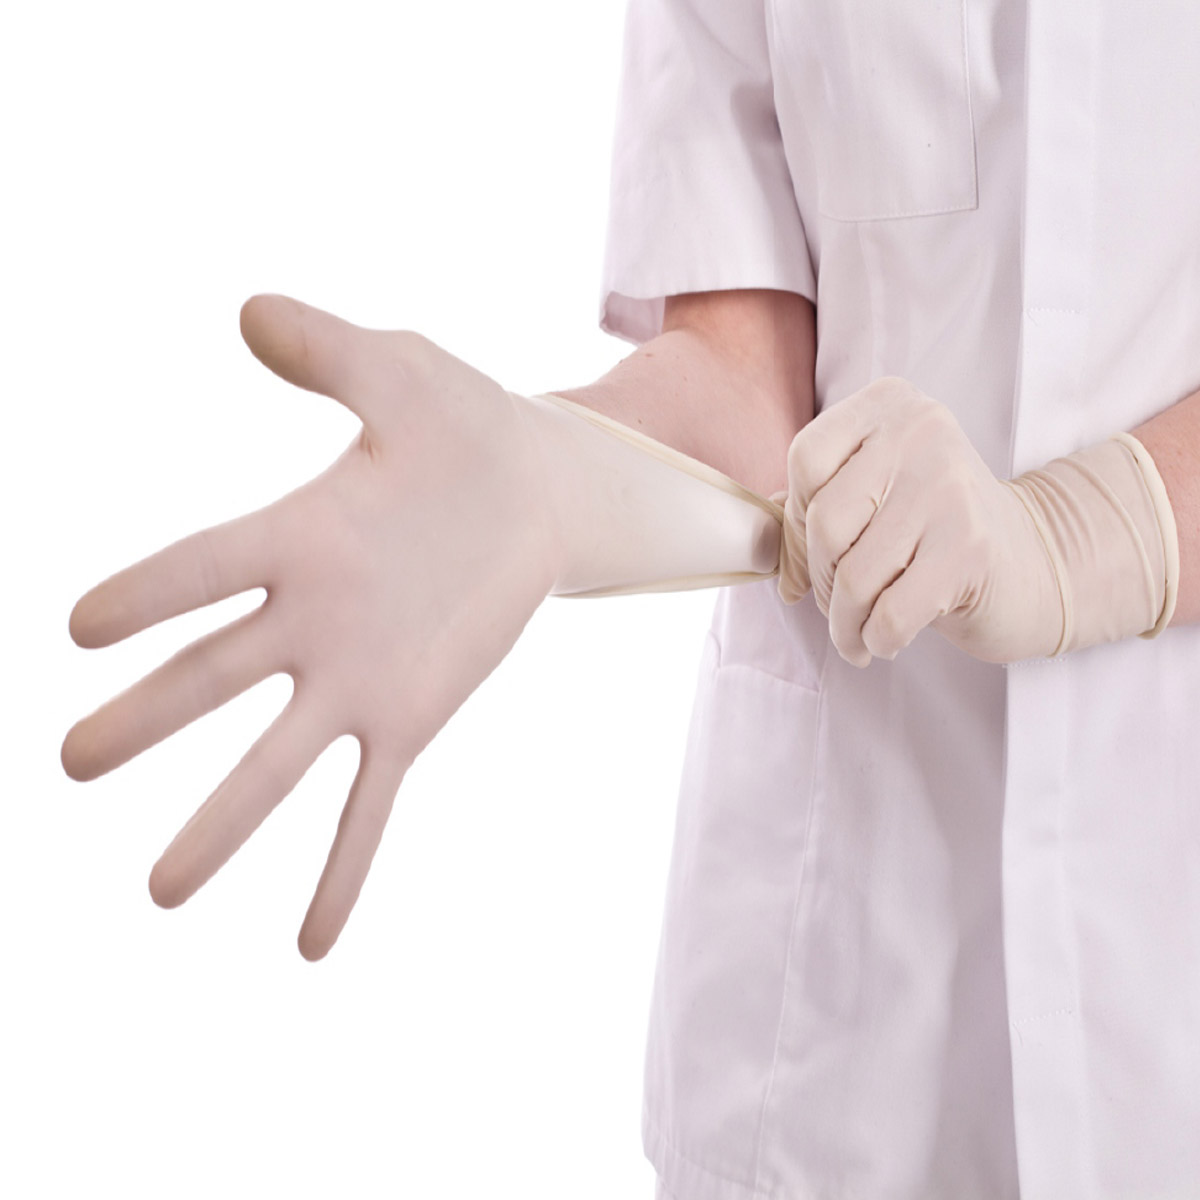 Стерильные медицинские перчатки надевают в случаях. Медсестра надевает перчатки. Надеть перчатки медицинские. Перчатки медицинские однтые. Медицинская сестра надевает перчатки.